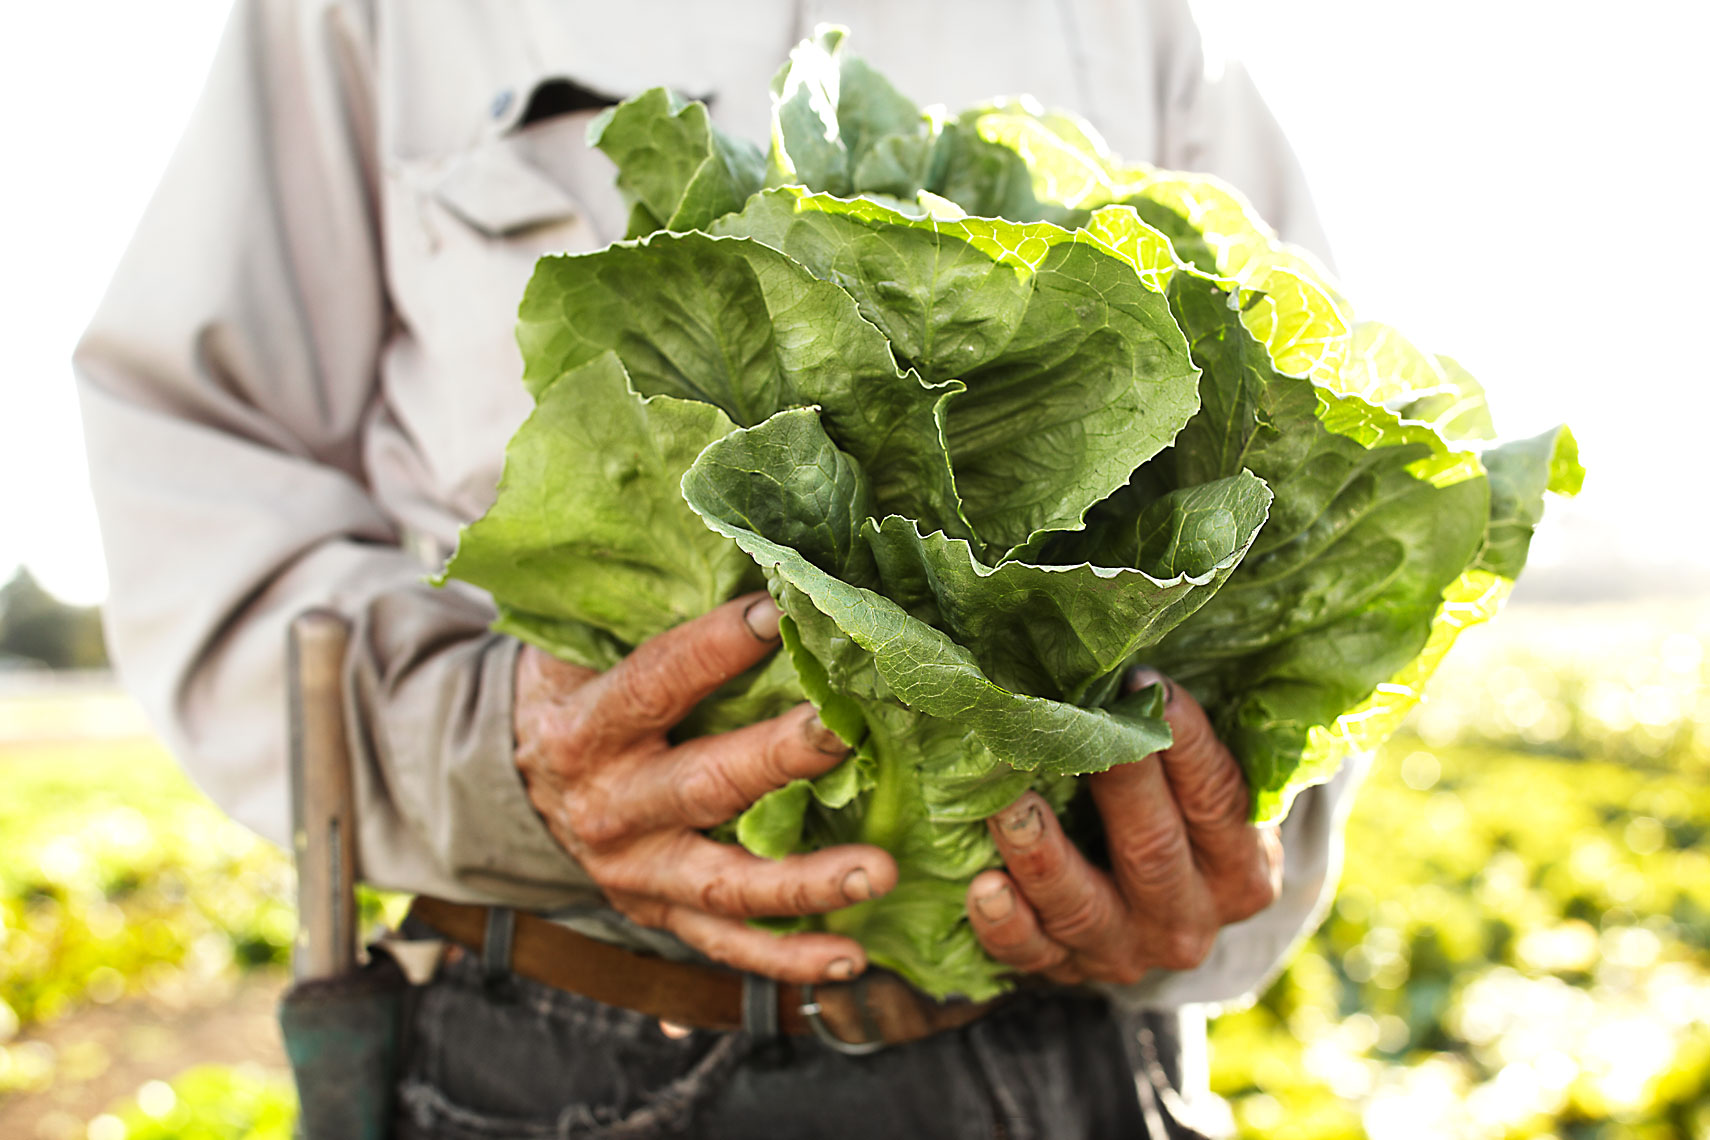 Veritable Vegetable lettuce in hand